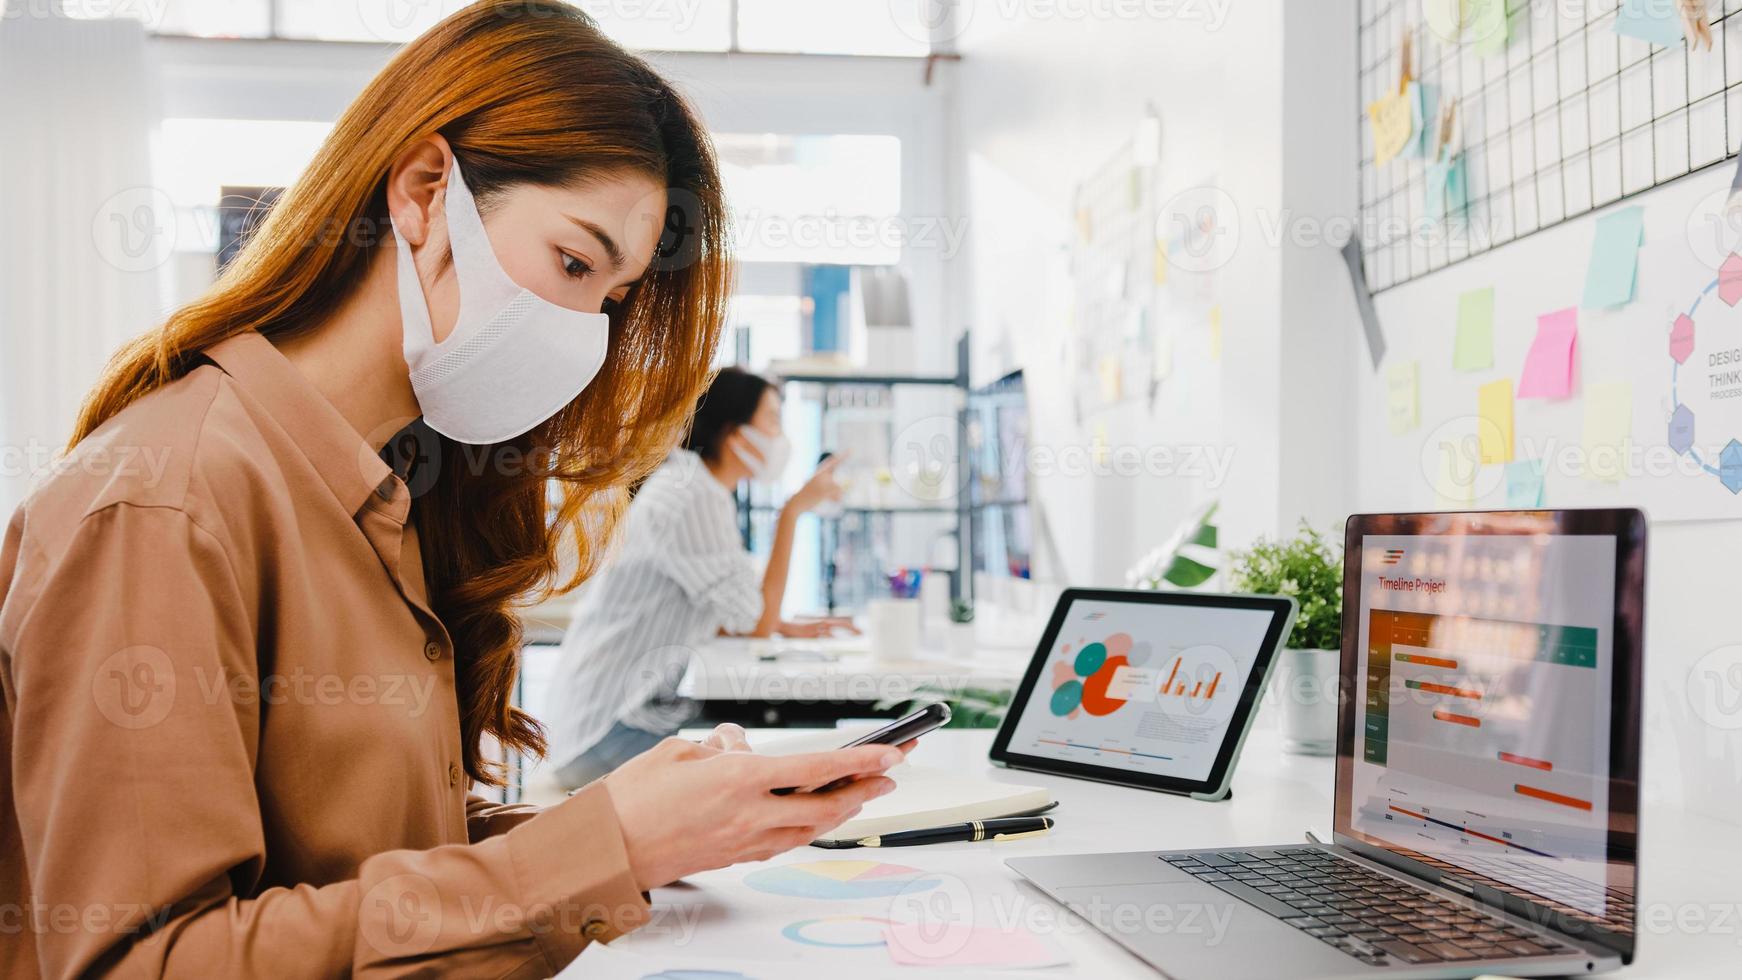 Unternehmerin aus Asien, die Gesichtsmaske für soziale Distanzierung in einer neuen normalen Situation zur Virusprävention trägt, während sie Laptop und Telefon bei der Arbeit im Büro verwendet. Lebensstil nach dem Corona-Virus. foto